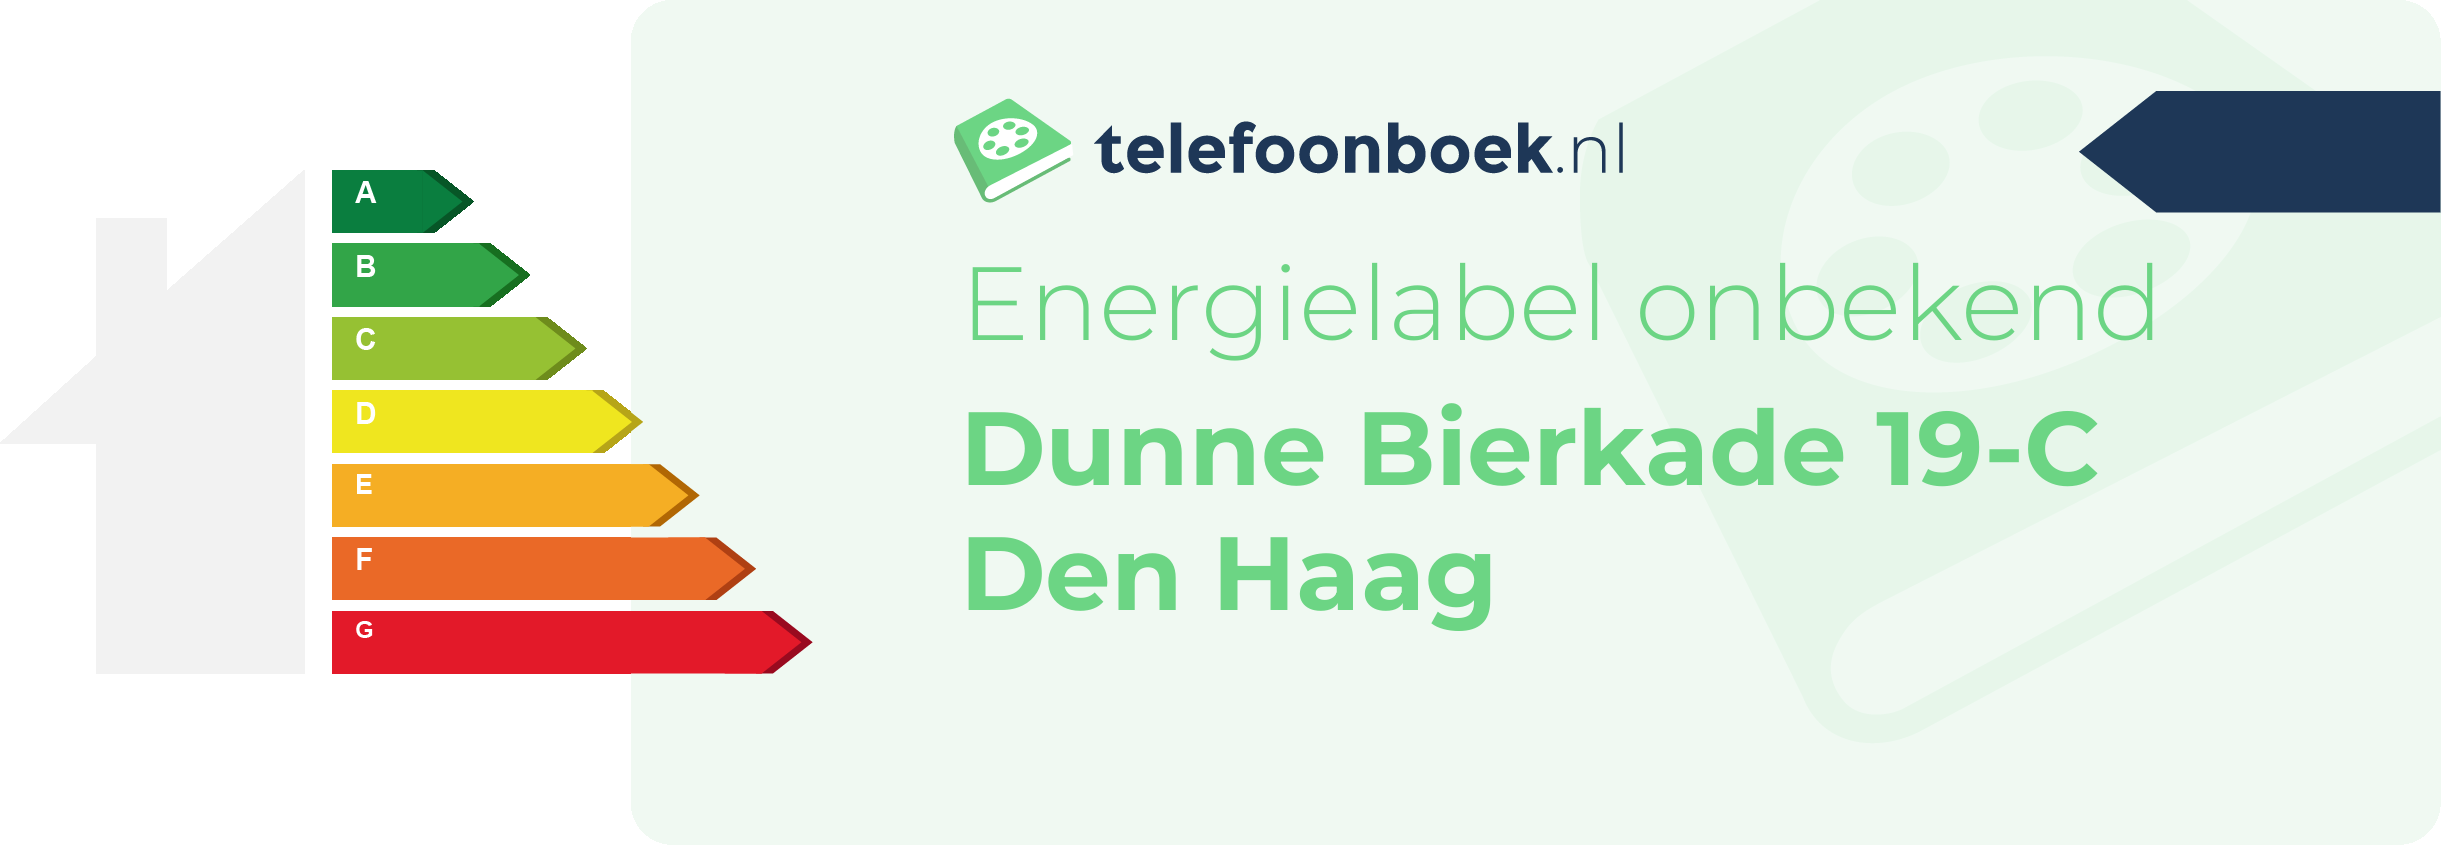 Energielabel Dunne Bierkade 19-C Den Haag